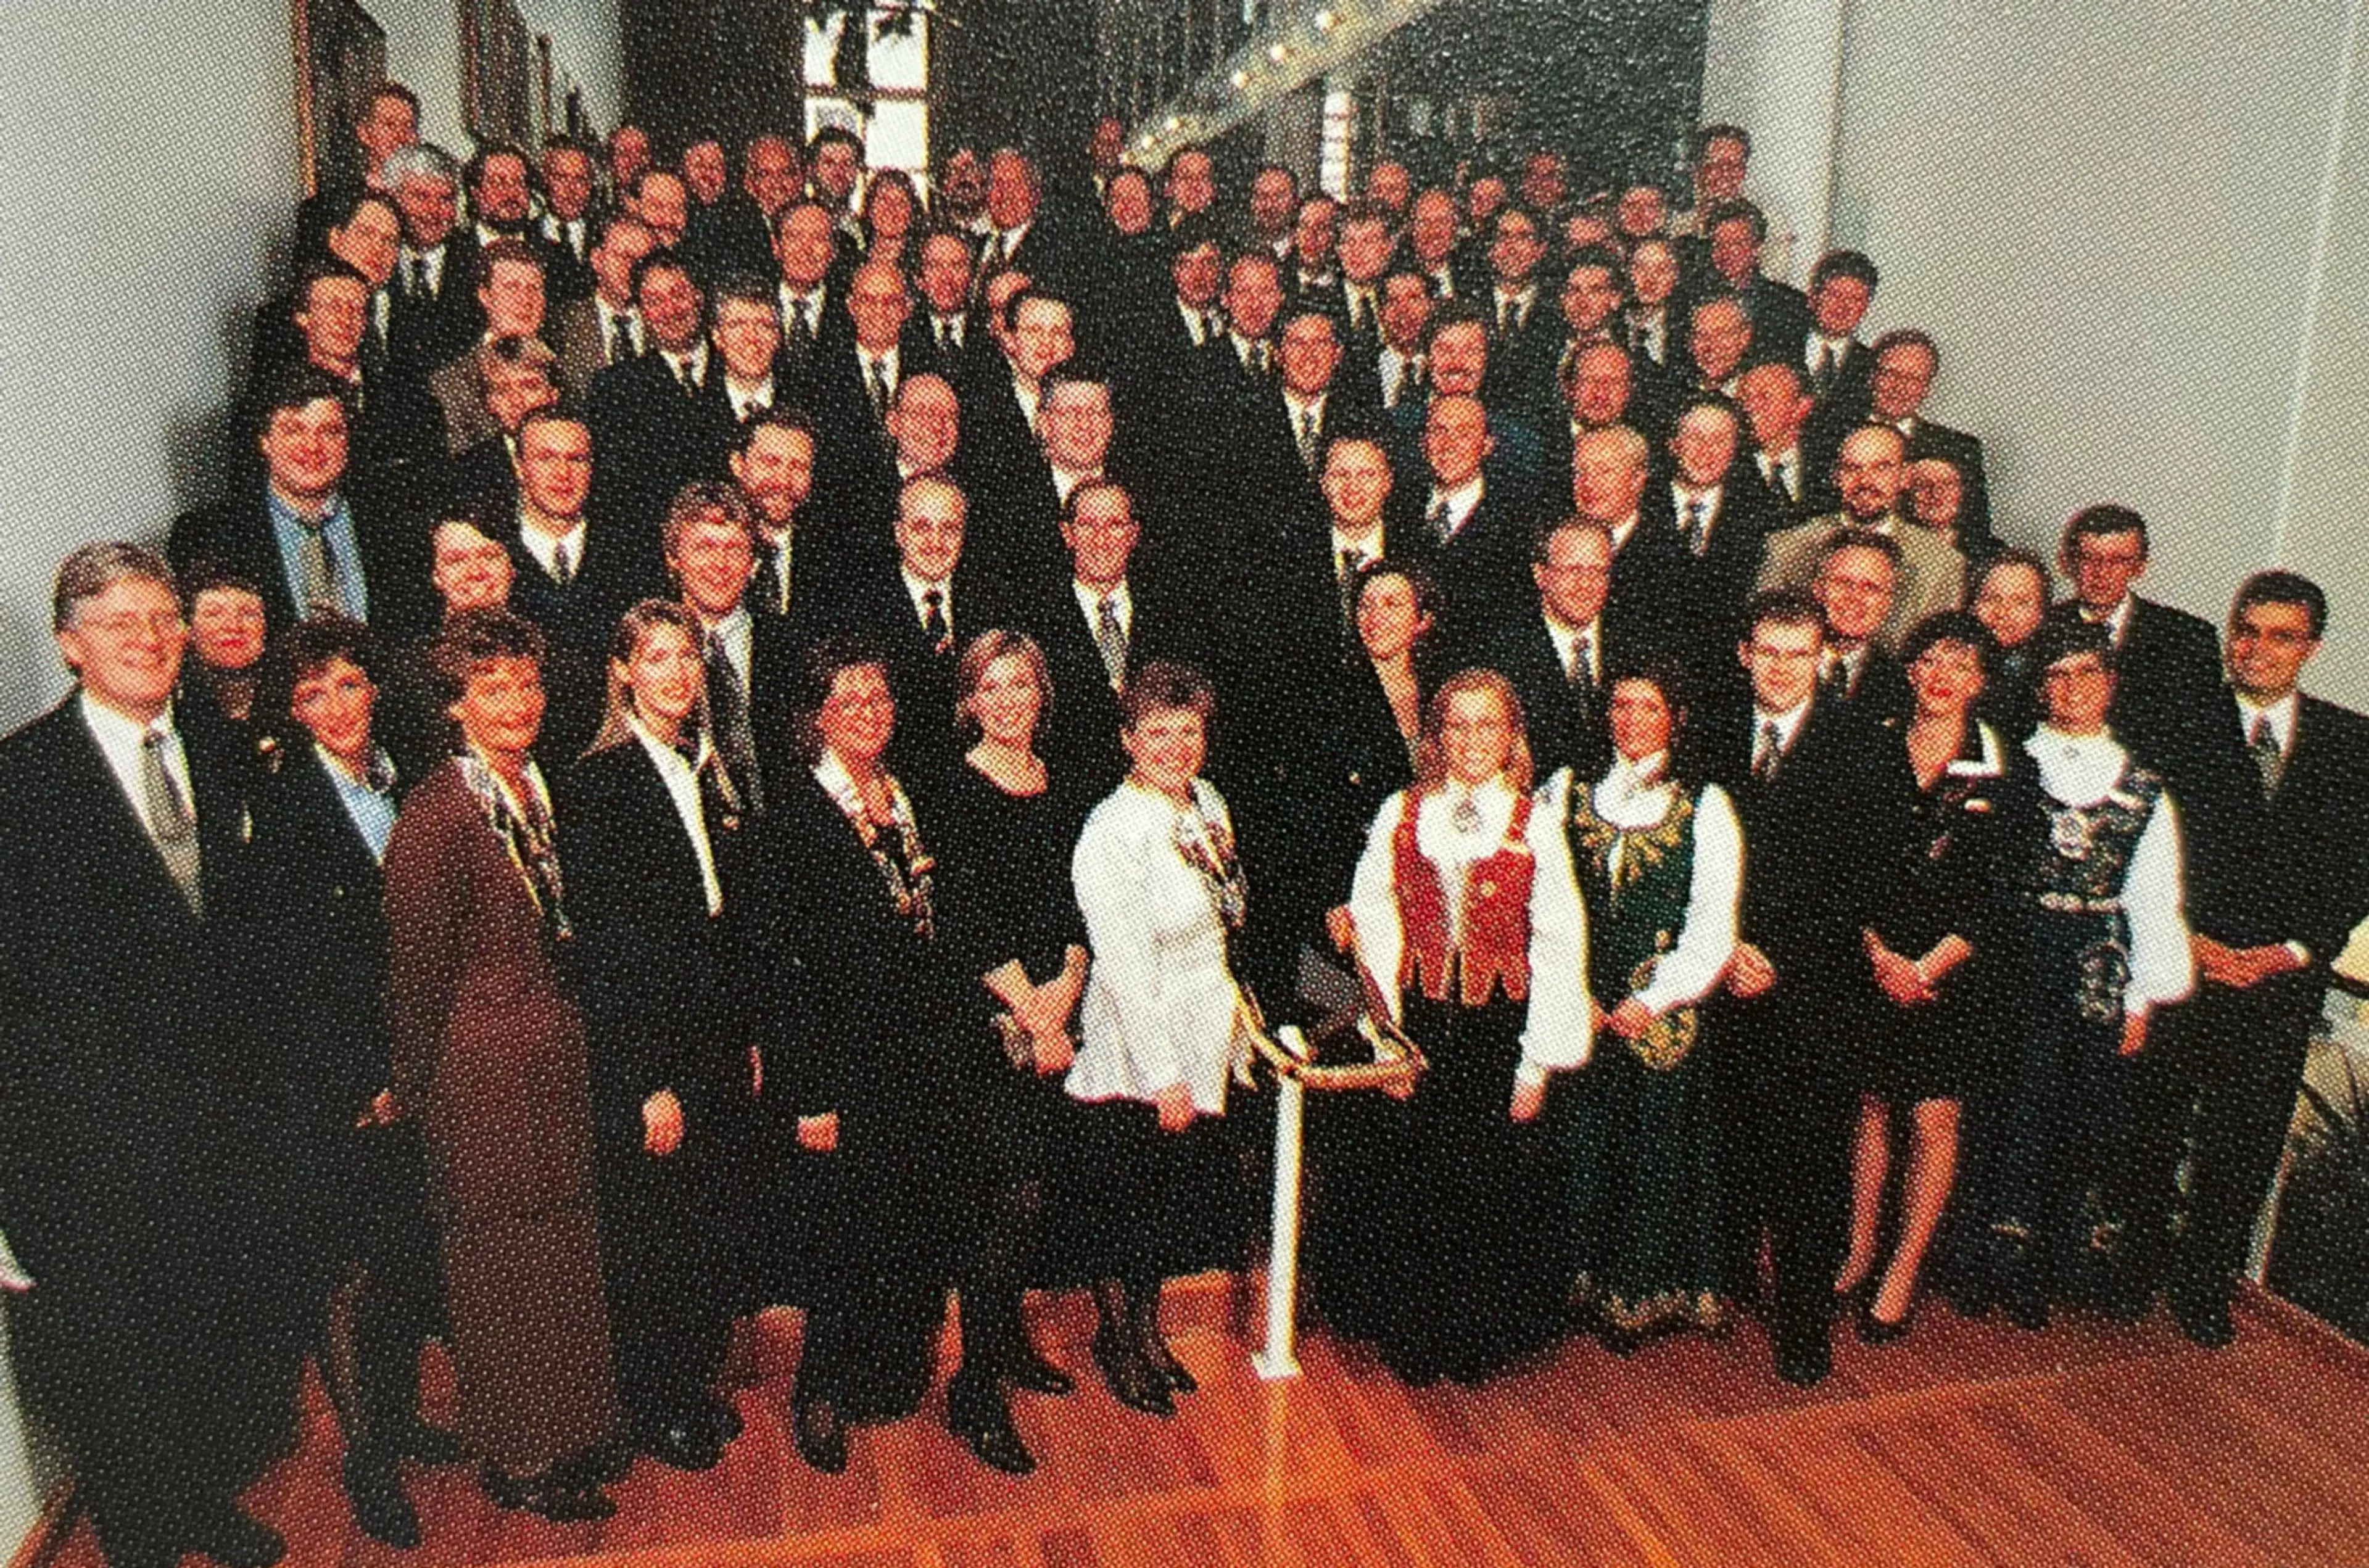 Wittusen & Jensens jubileumsfest i 1997